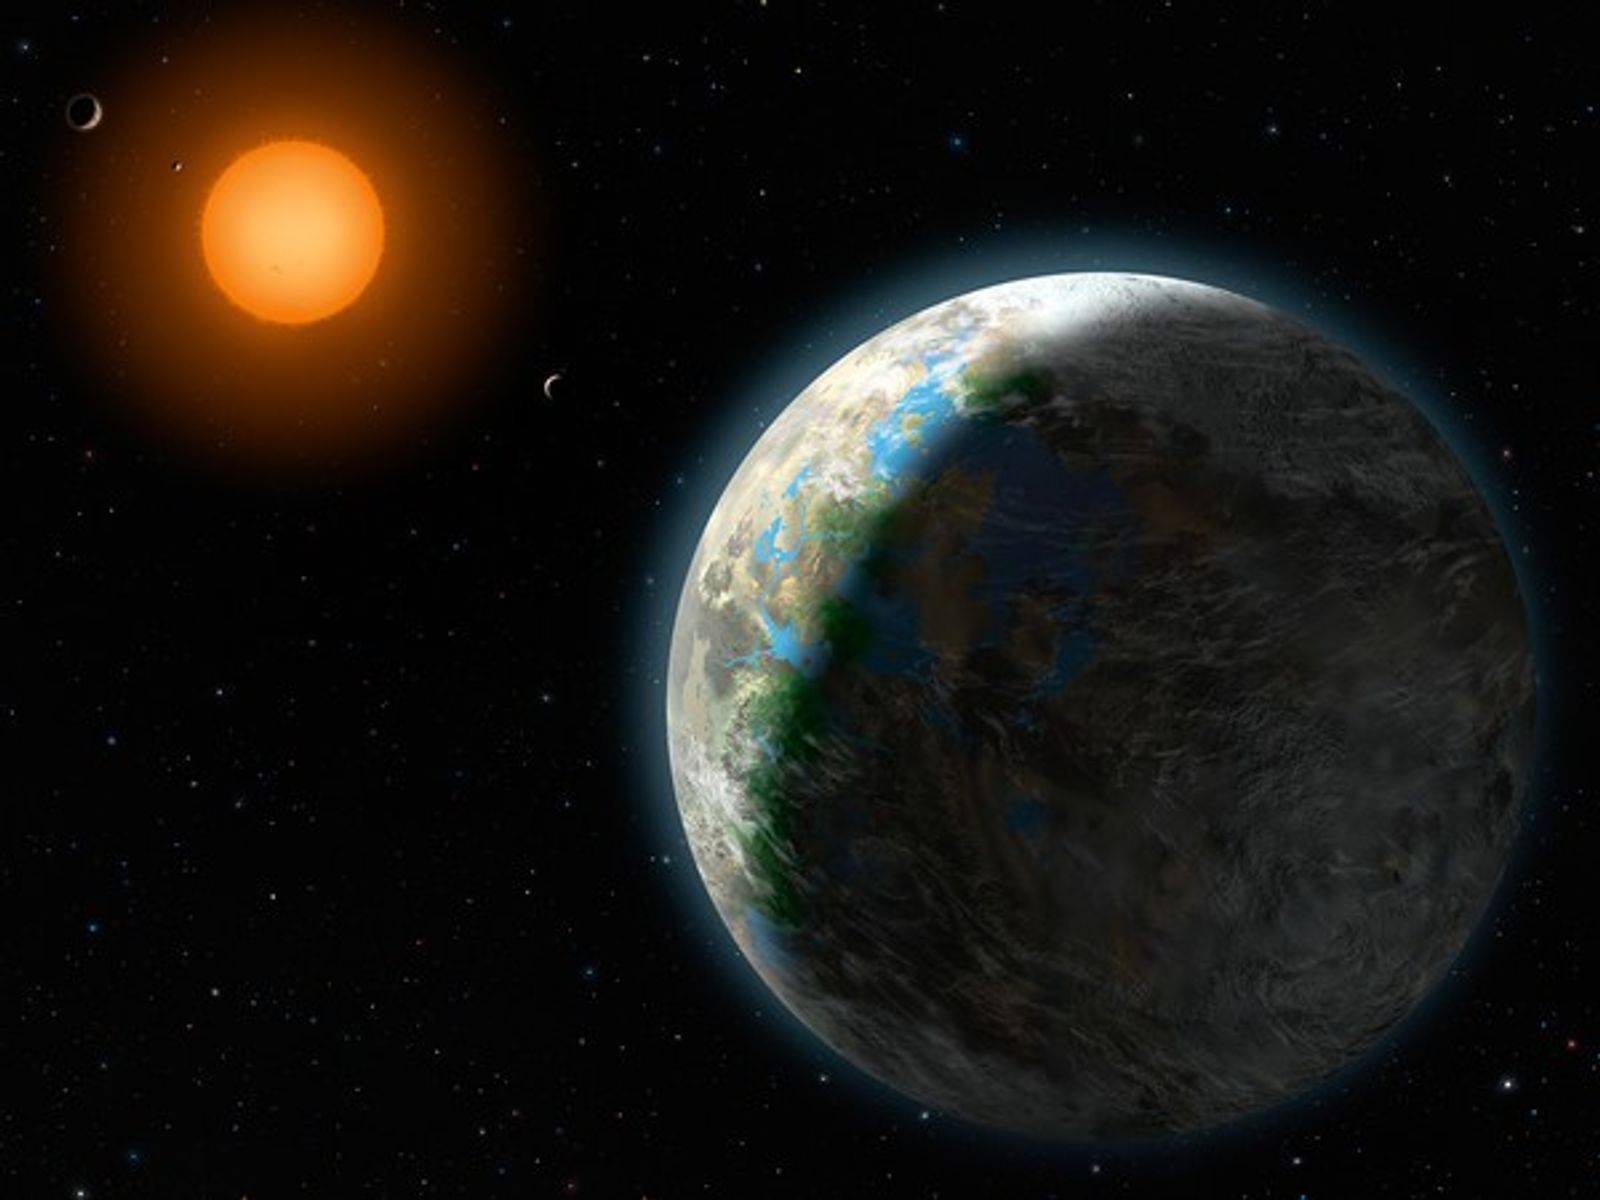 Del descubrimiento de Gliese 581g al primer contacto con extraterrestres y el fin del mundo de 2012